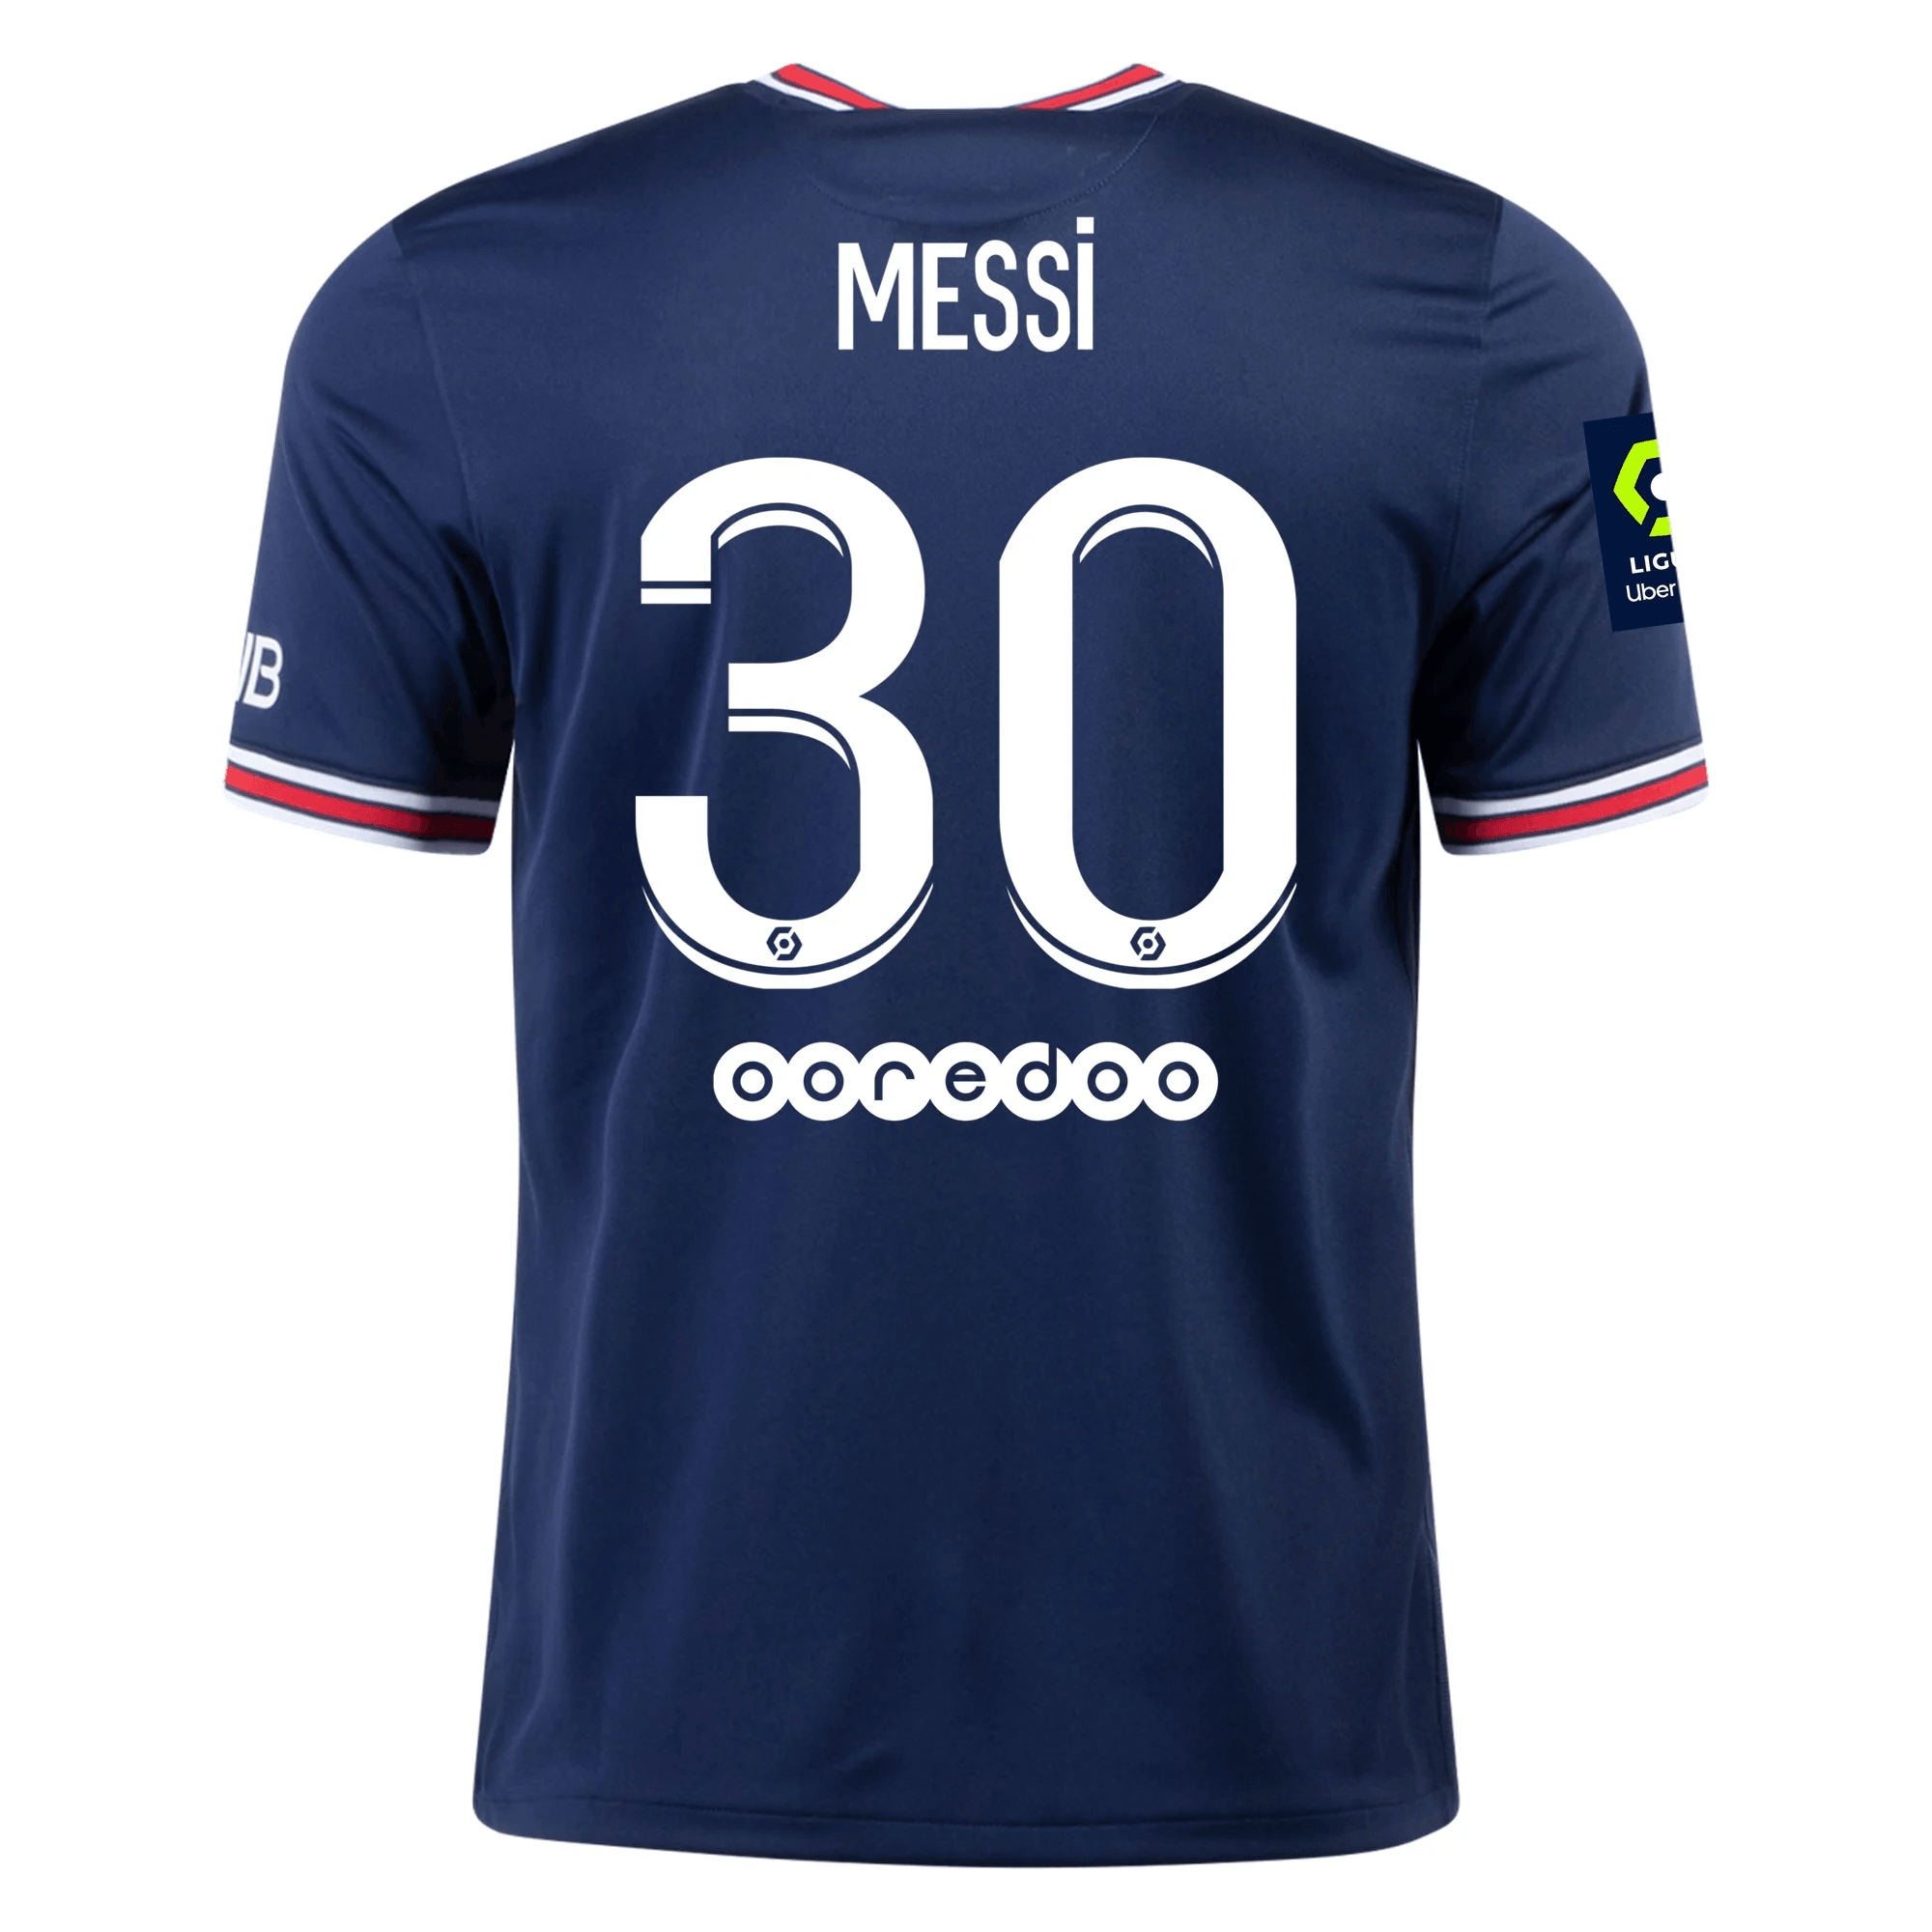 Qual é o nome da camisa do Messi?